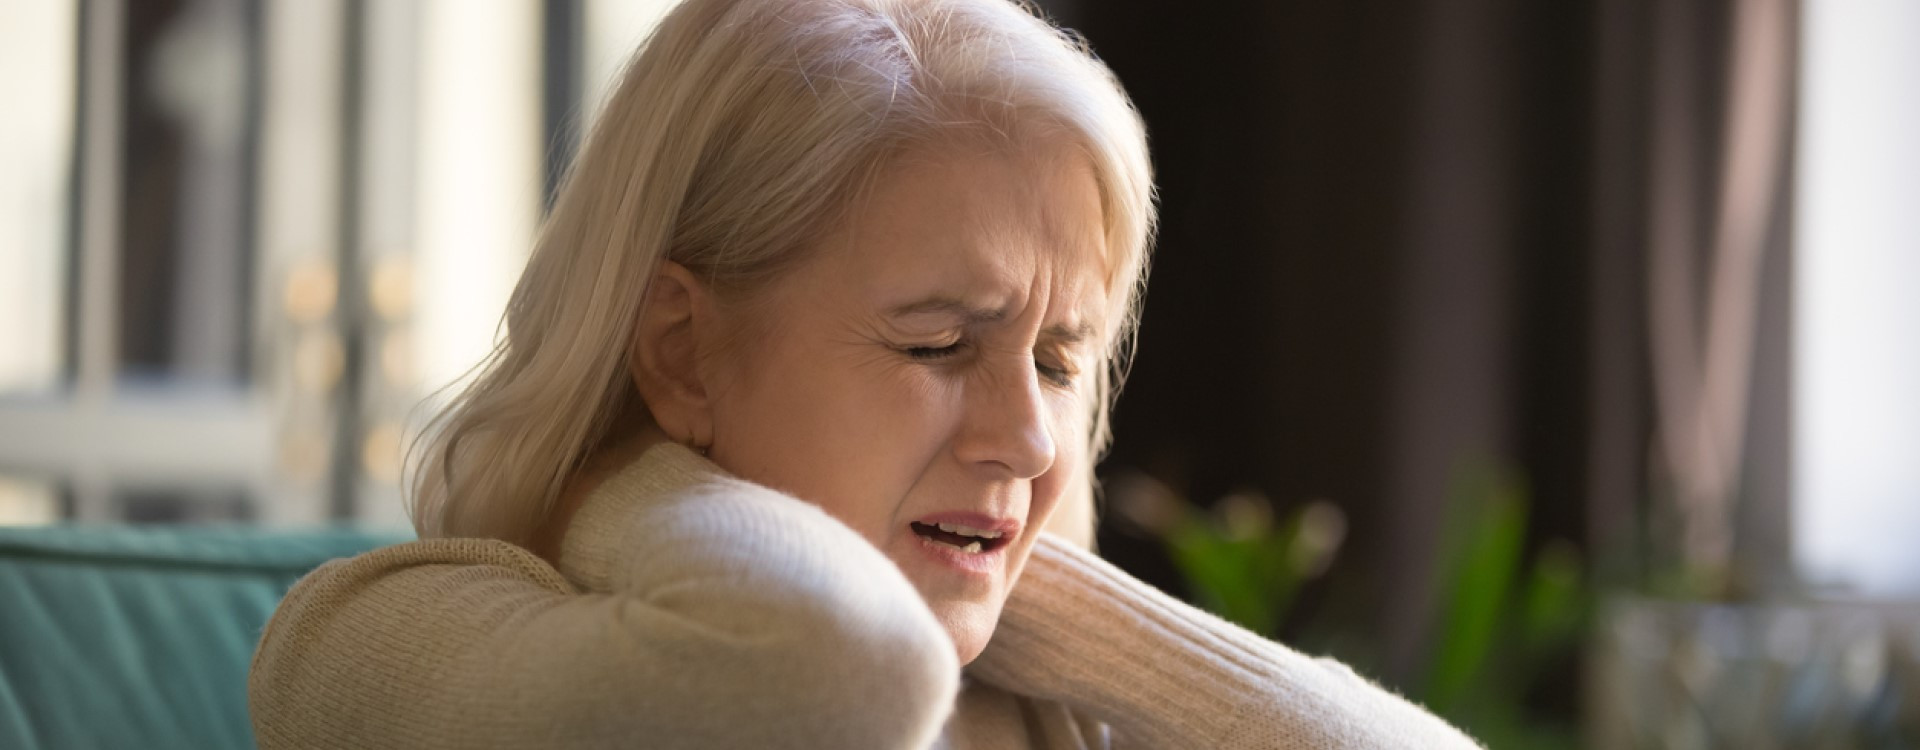 4 remèdes de grand-mère pour l'arthrose cervicale - Bluetens